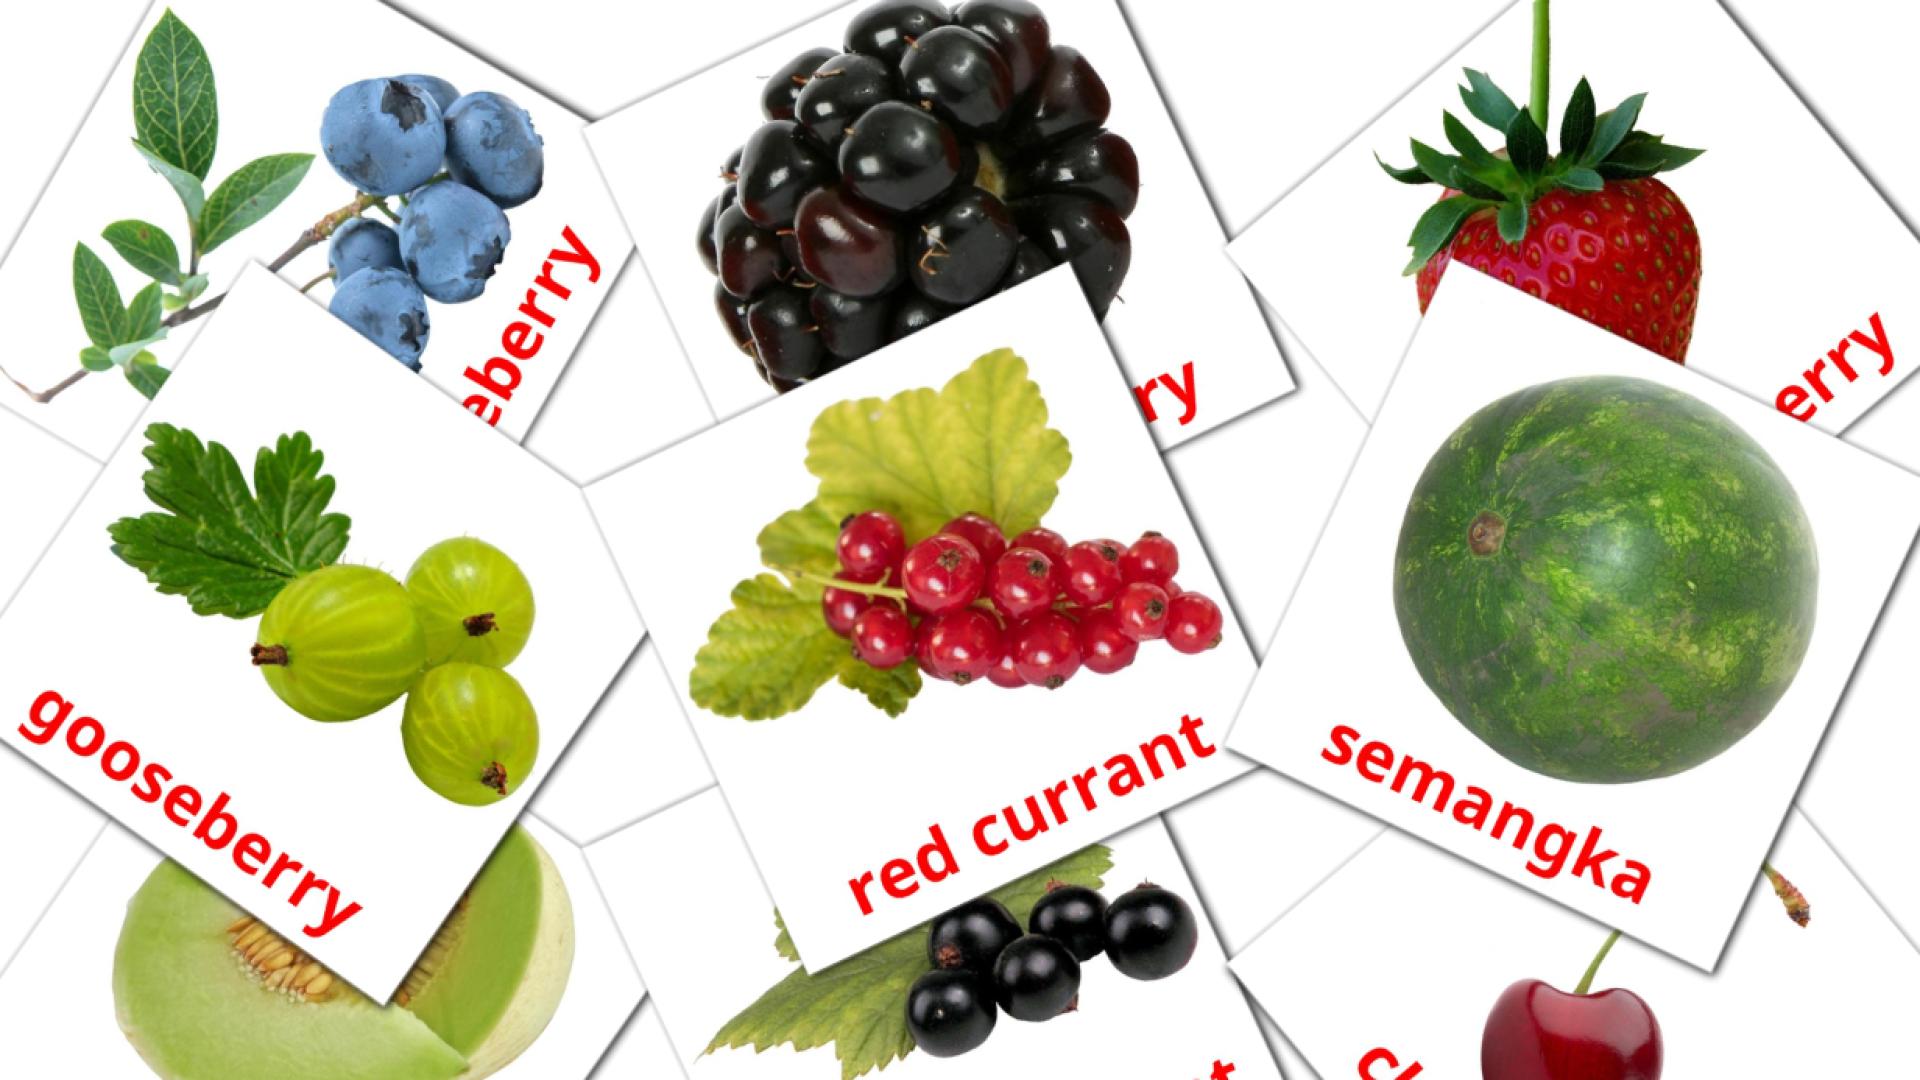 Bildkarten für Berries